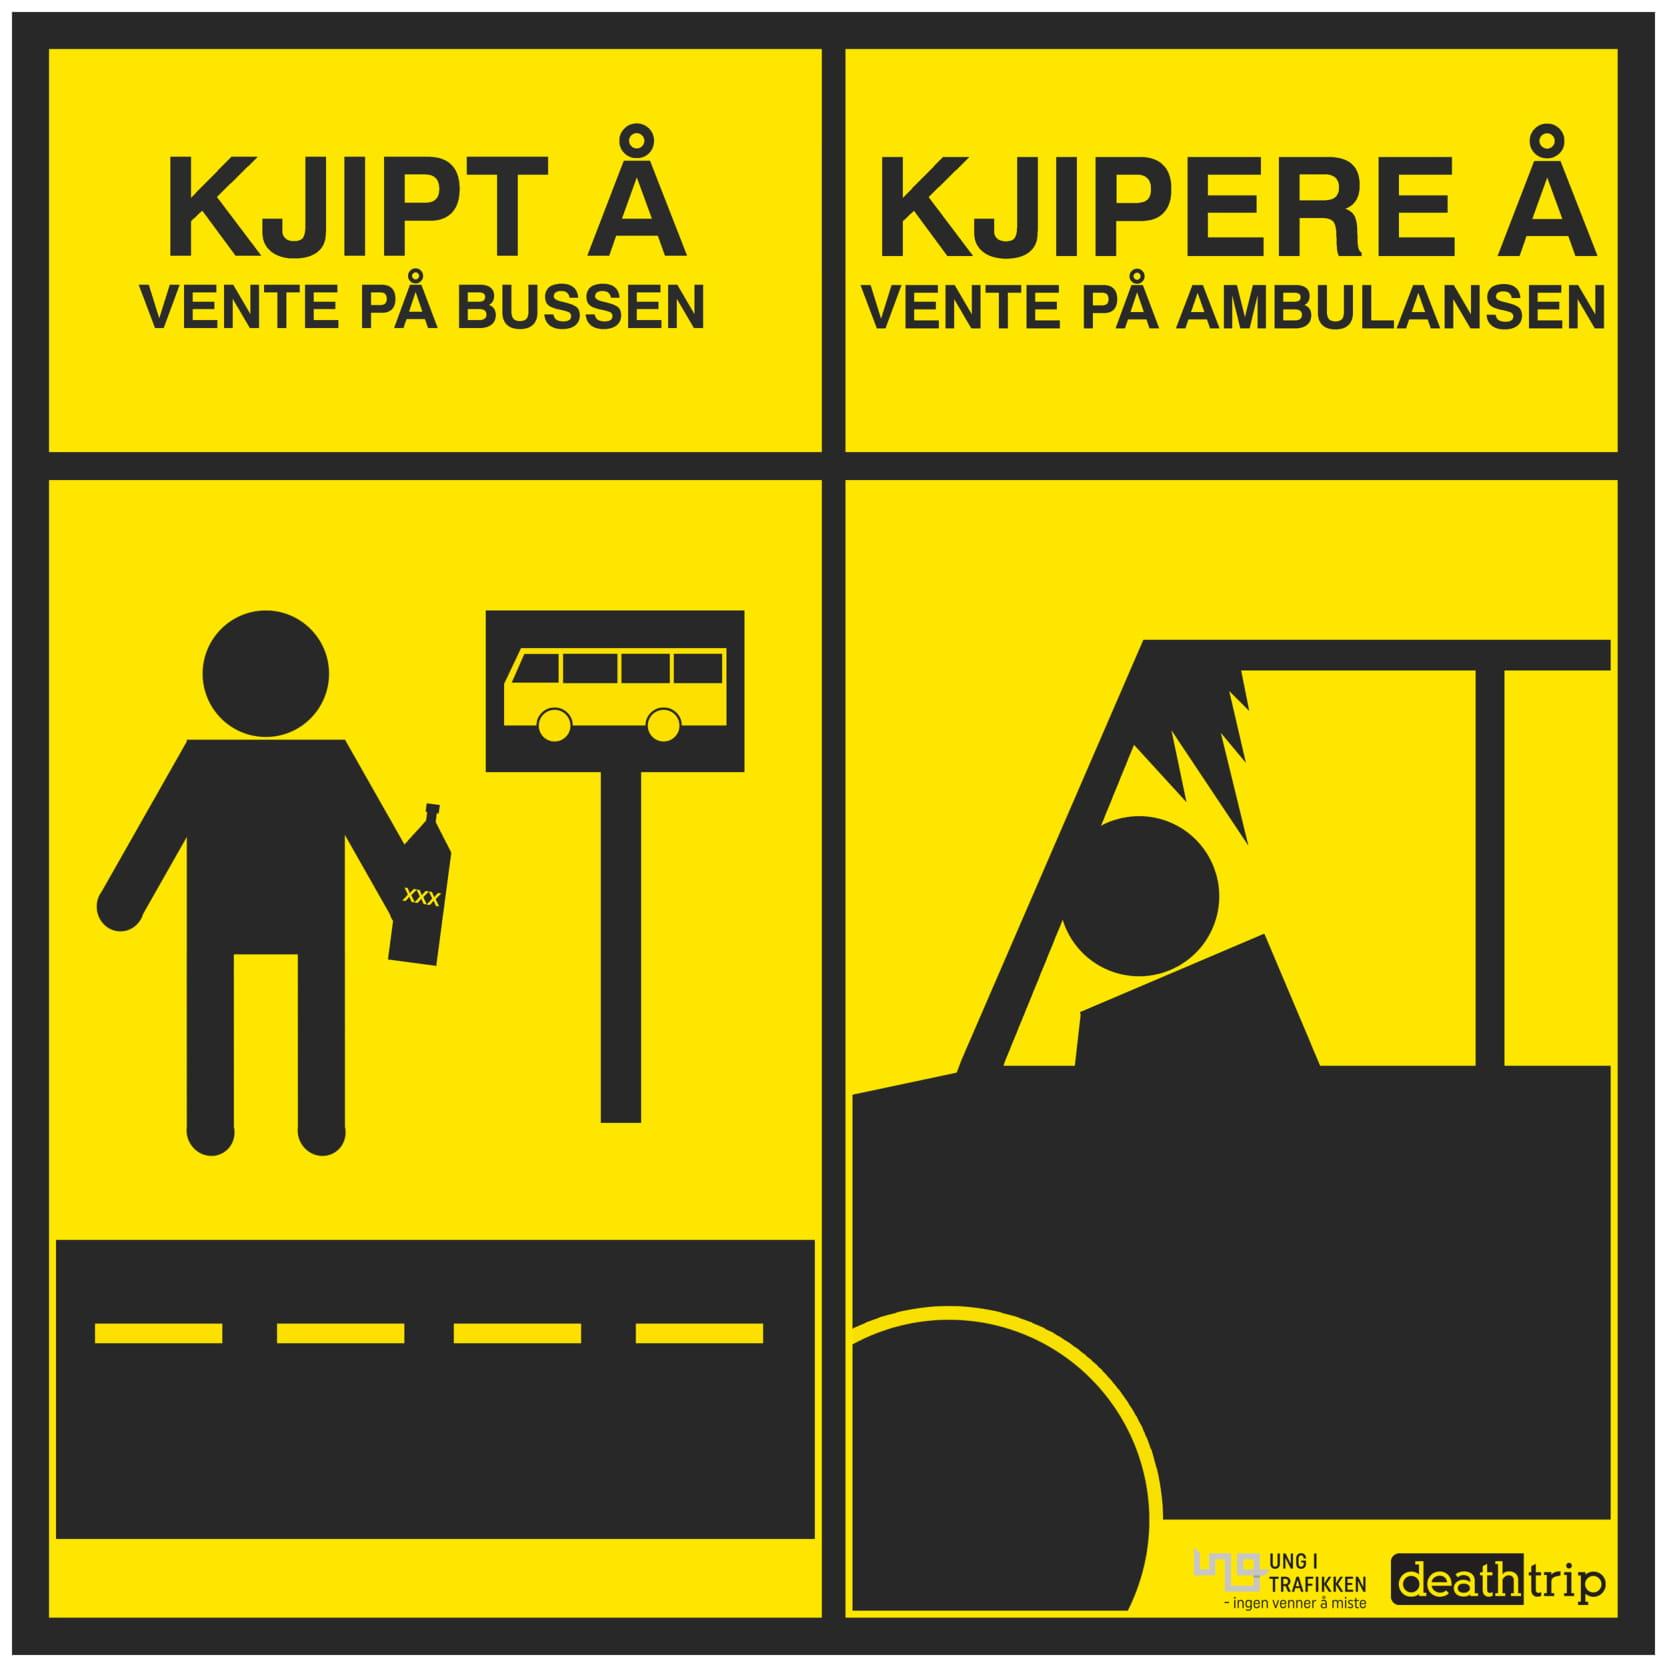 Tegneserie med tekst: Kjipt å vente på bussen. Kjipere å vente på ambulansen.